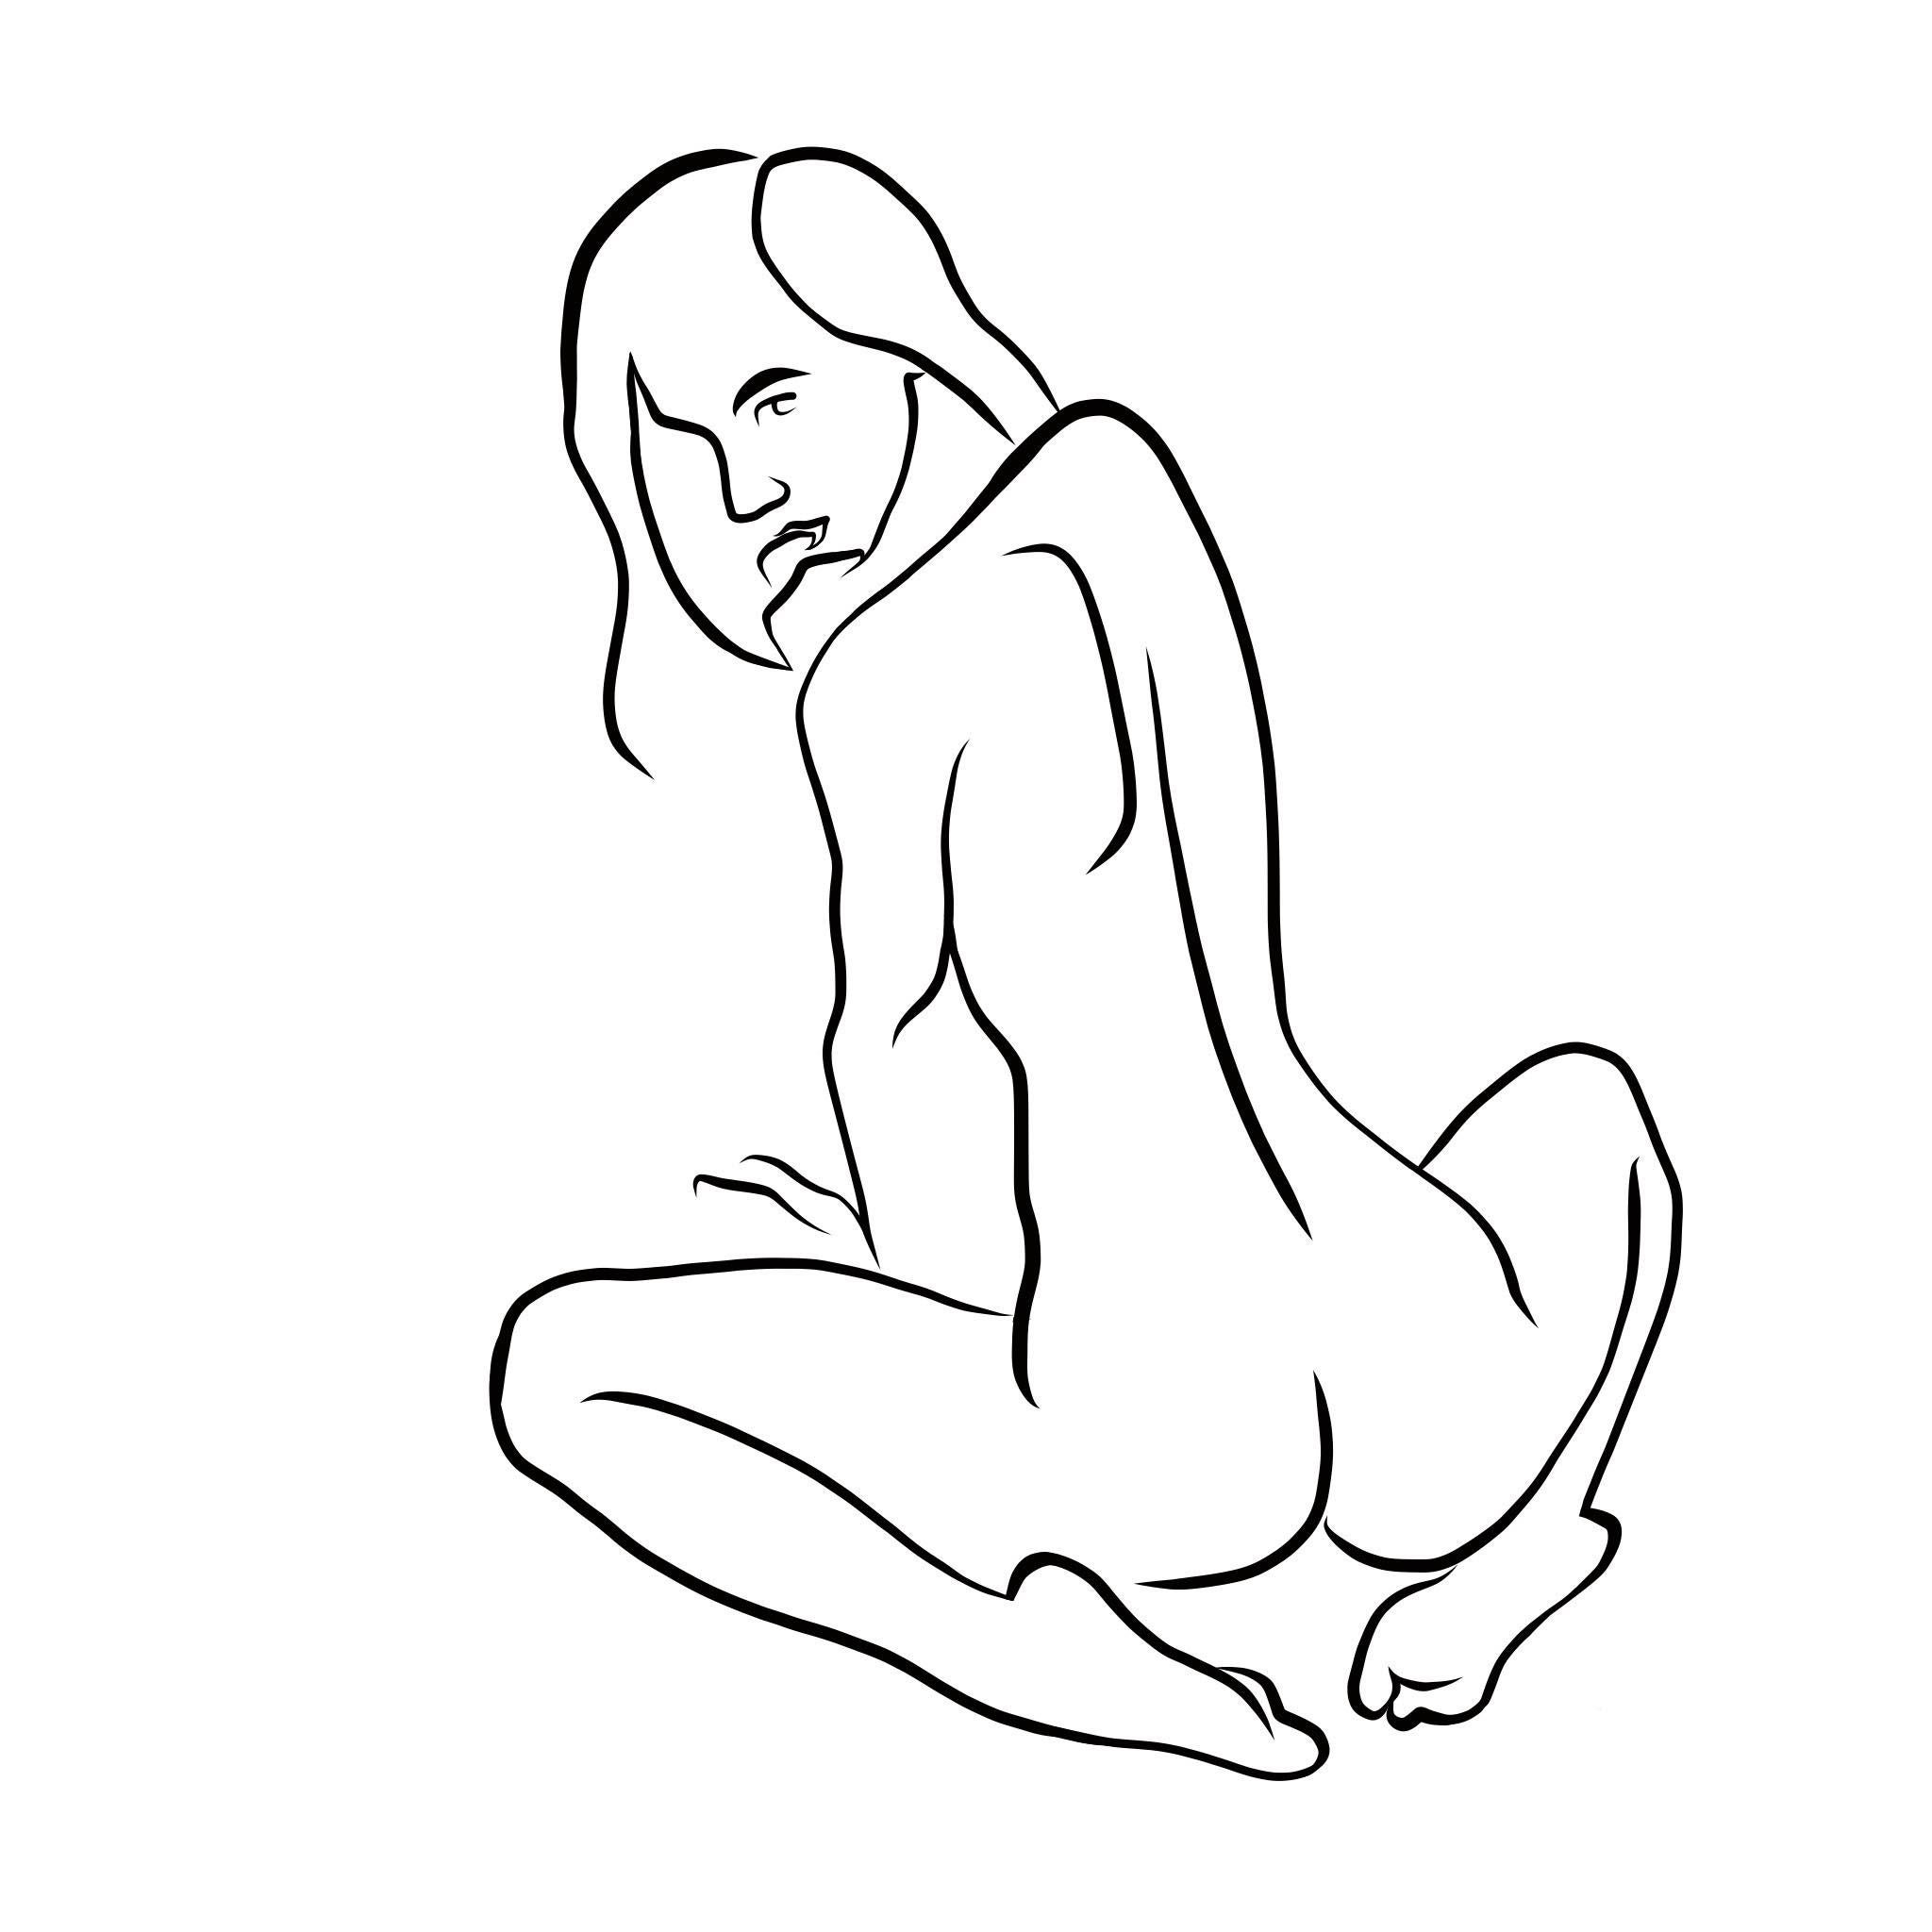 Michael Binkley Nude Print - Haiku #35 - Digital Vector Drawing Seated Female Nude Woman Figure Looking Back